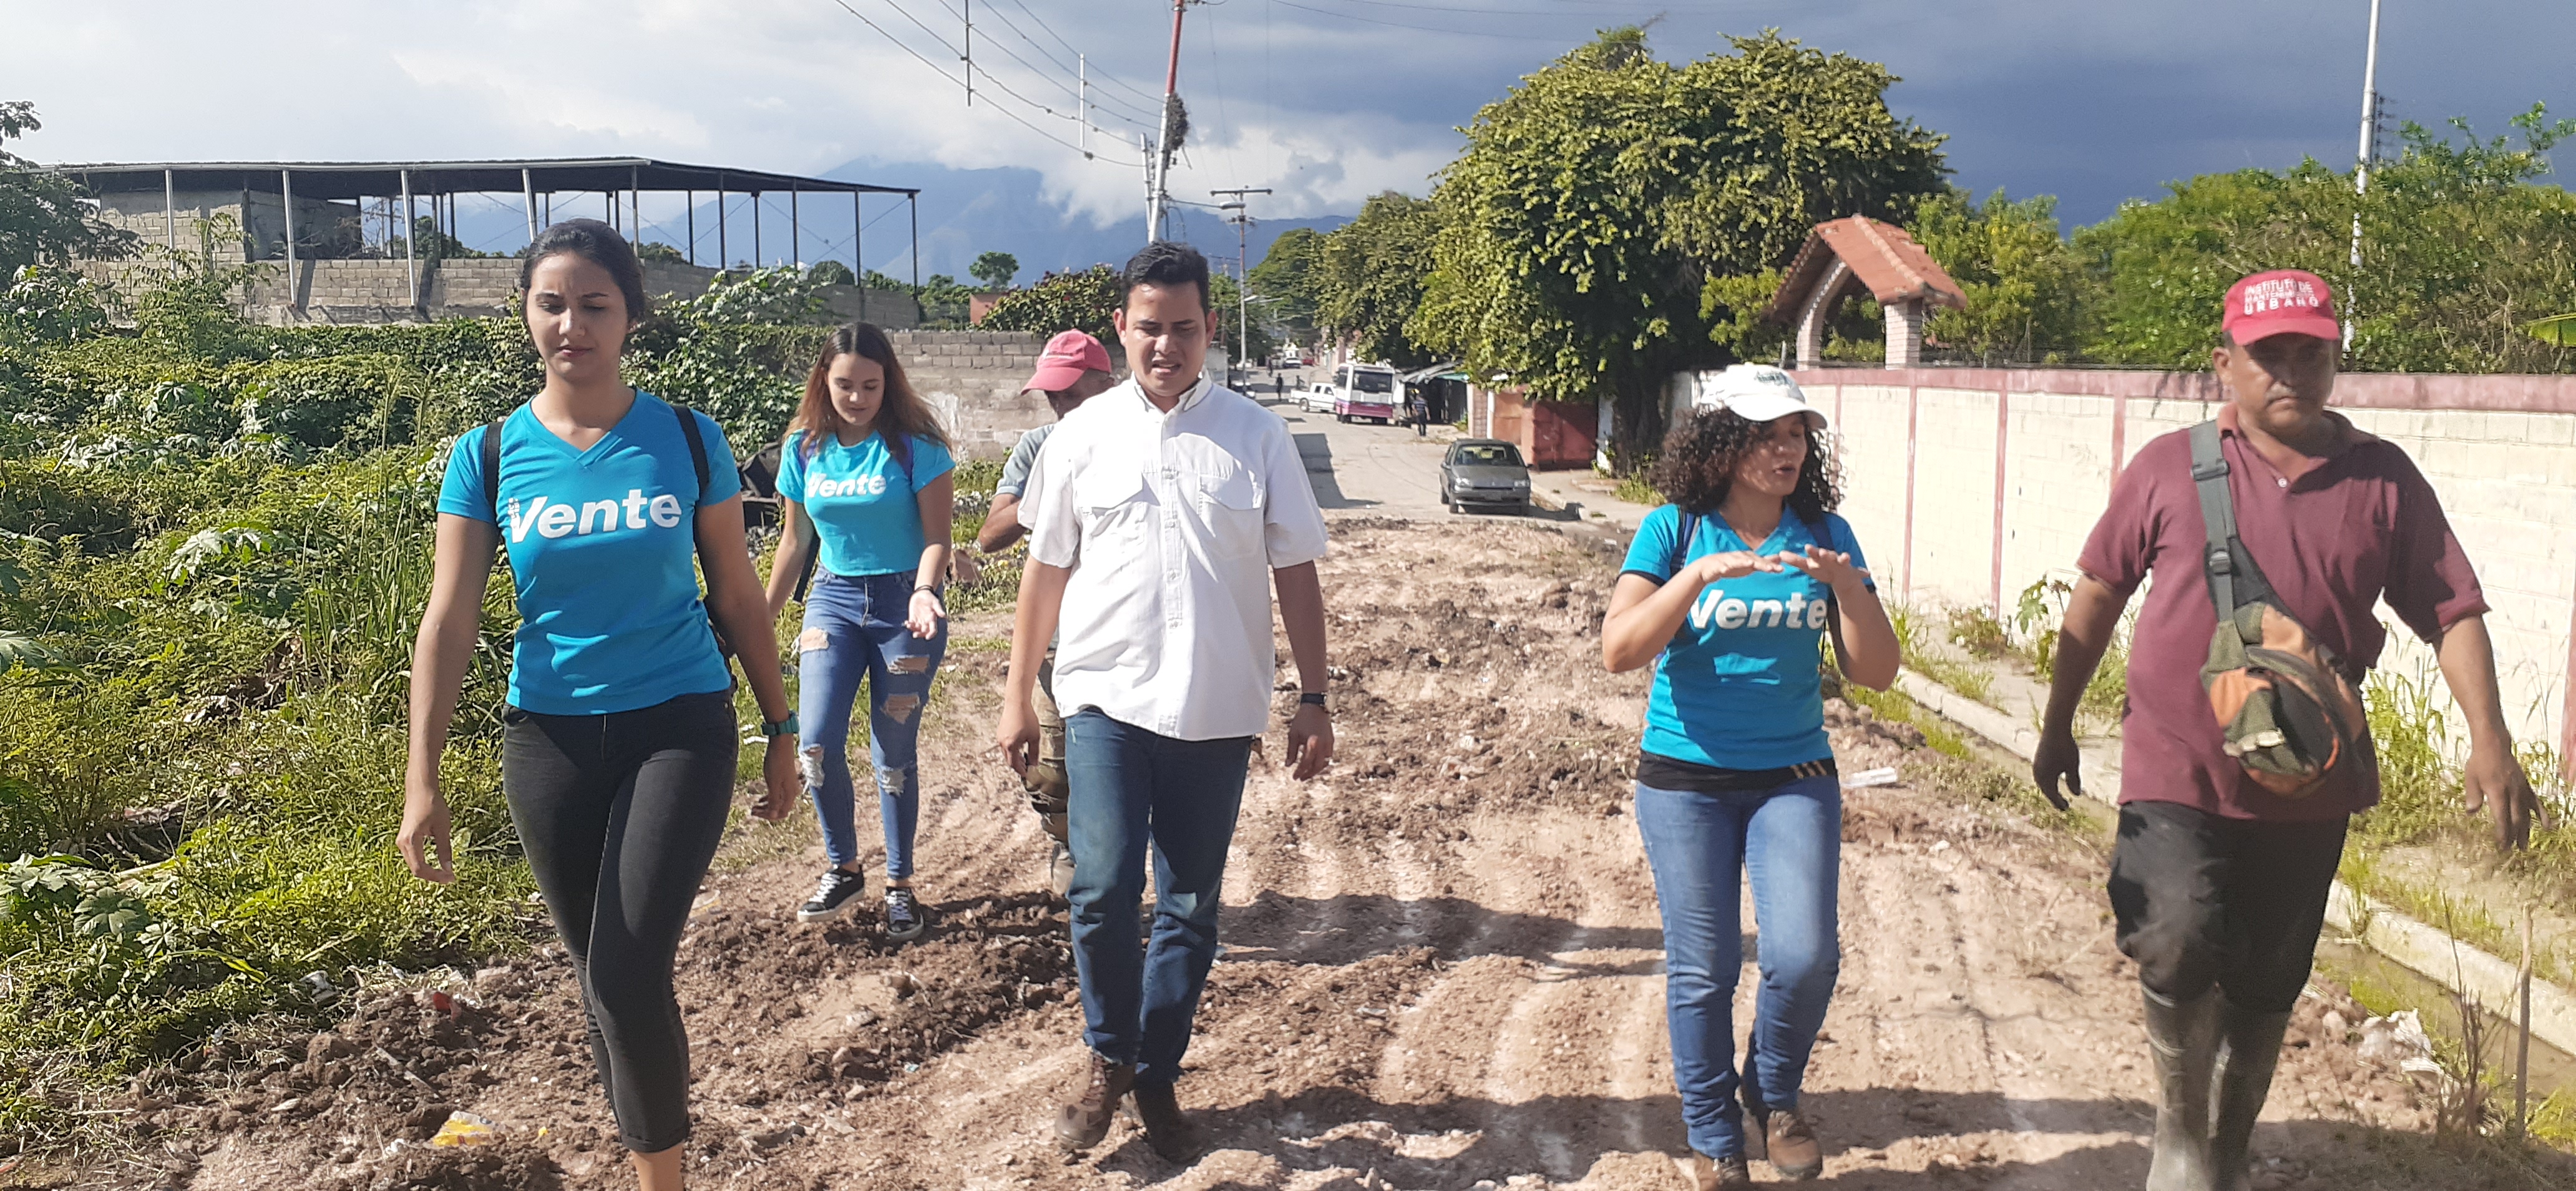 Vente Girardot desde Campo Alegre: El lago de Valencia se apodera del sur de Maracay